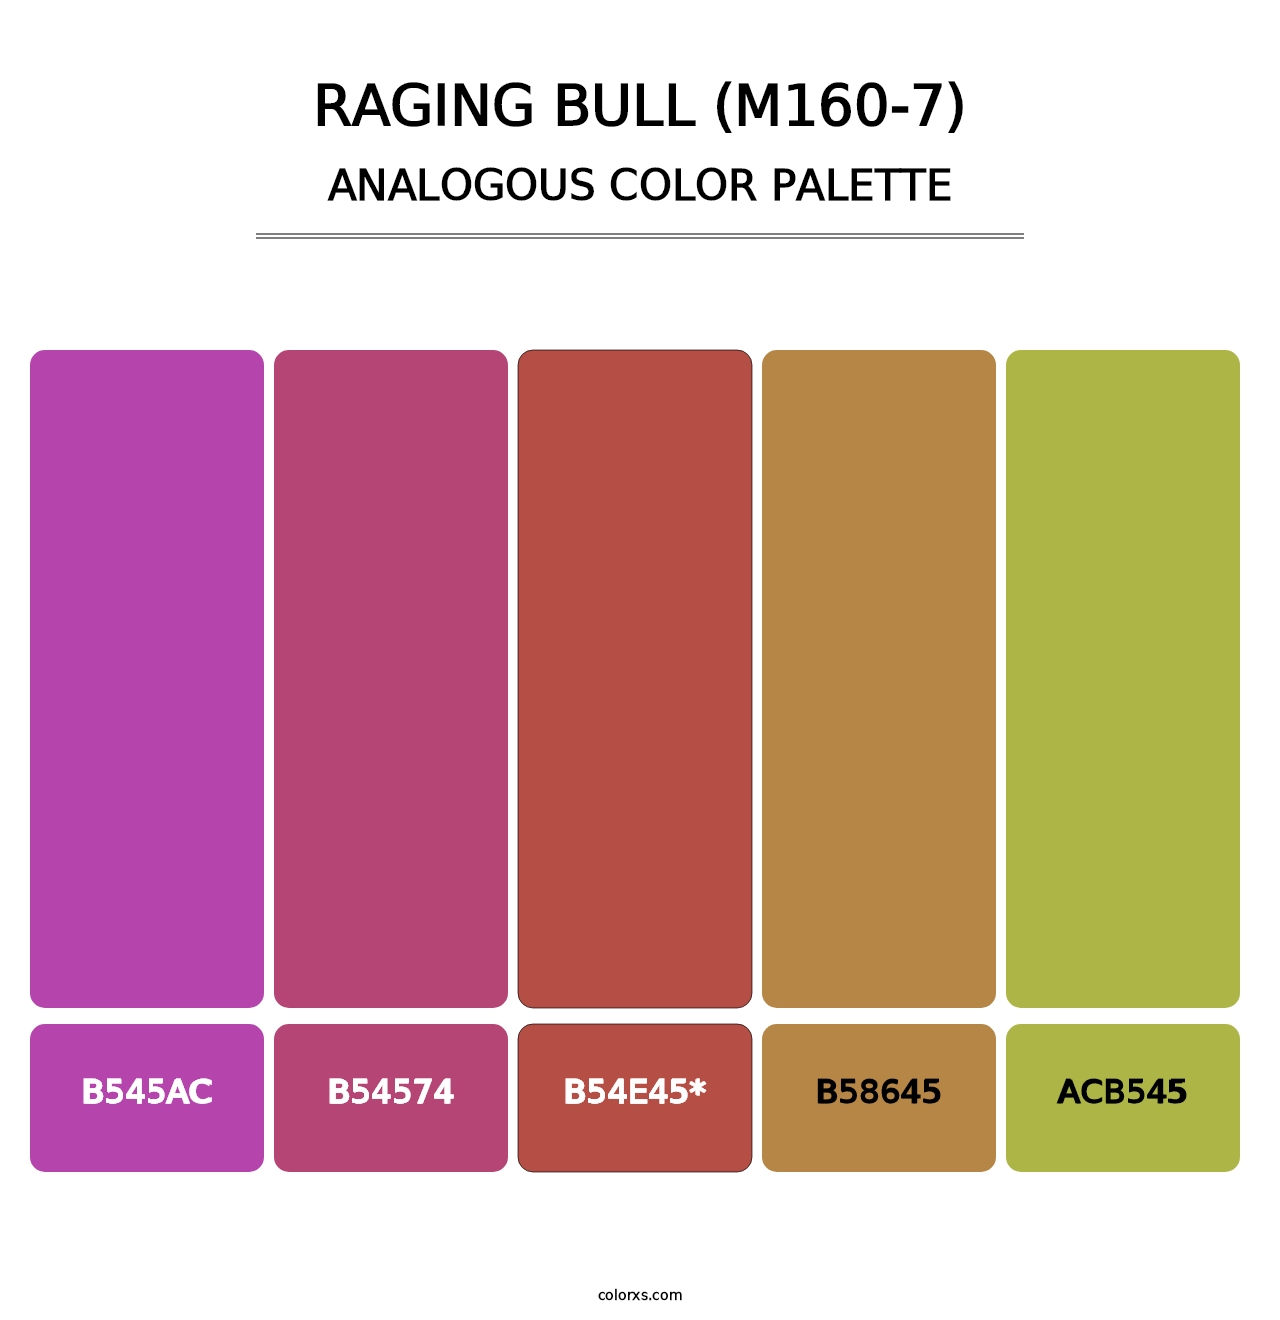 Raging Bull (M160-7) - Analogous Color Palette